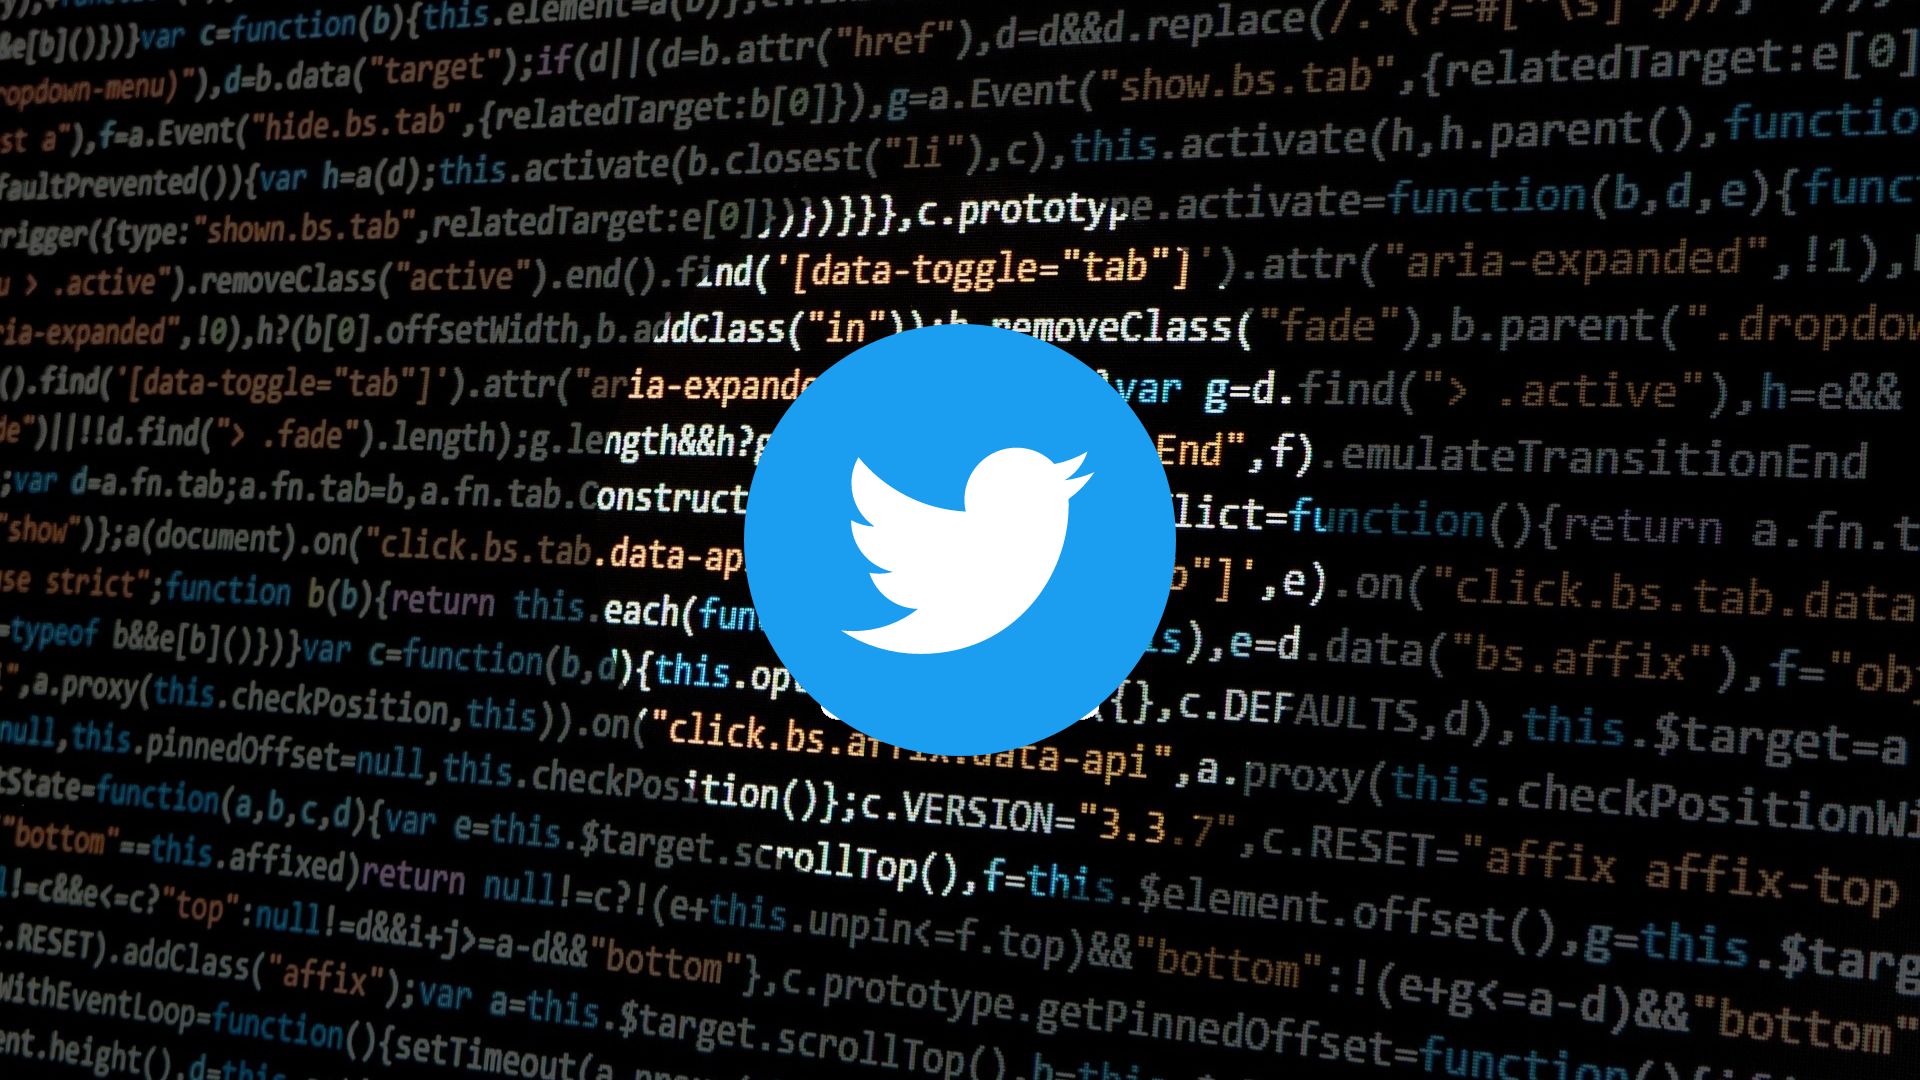 Twitter : Une fuite d'informations sur Twitter a touché plus d'un million de citoyens français